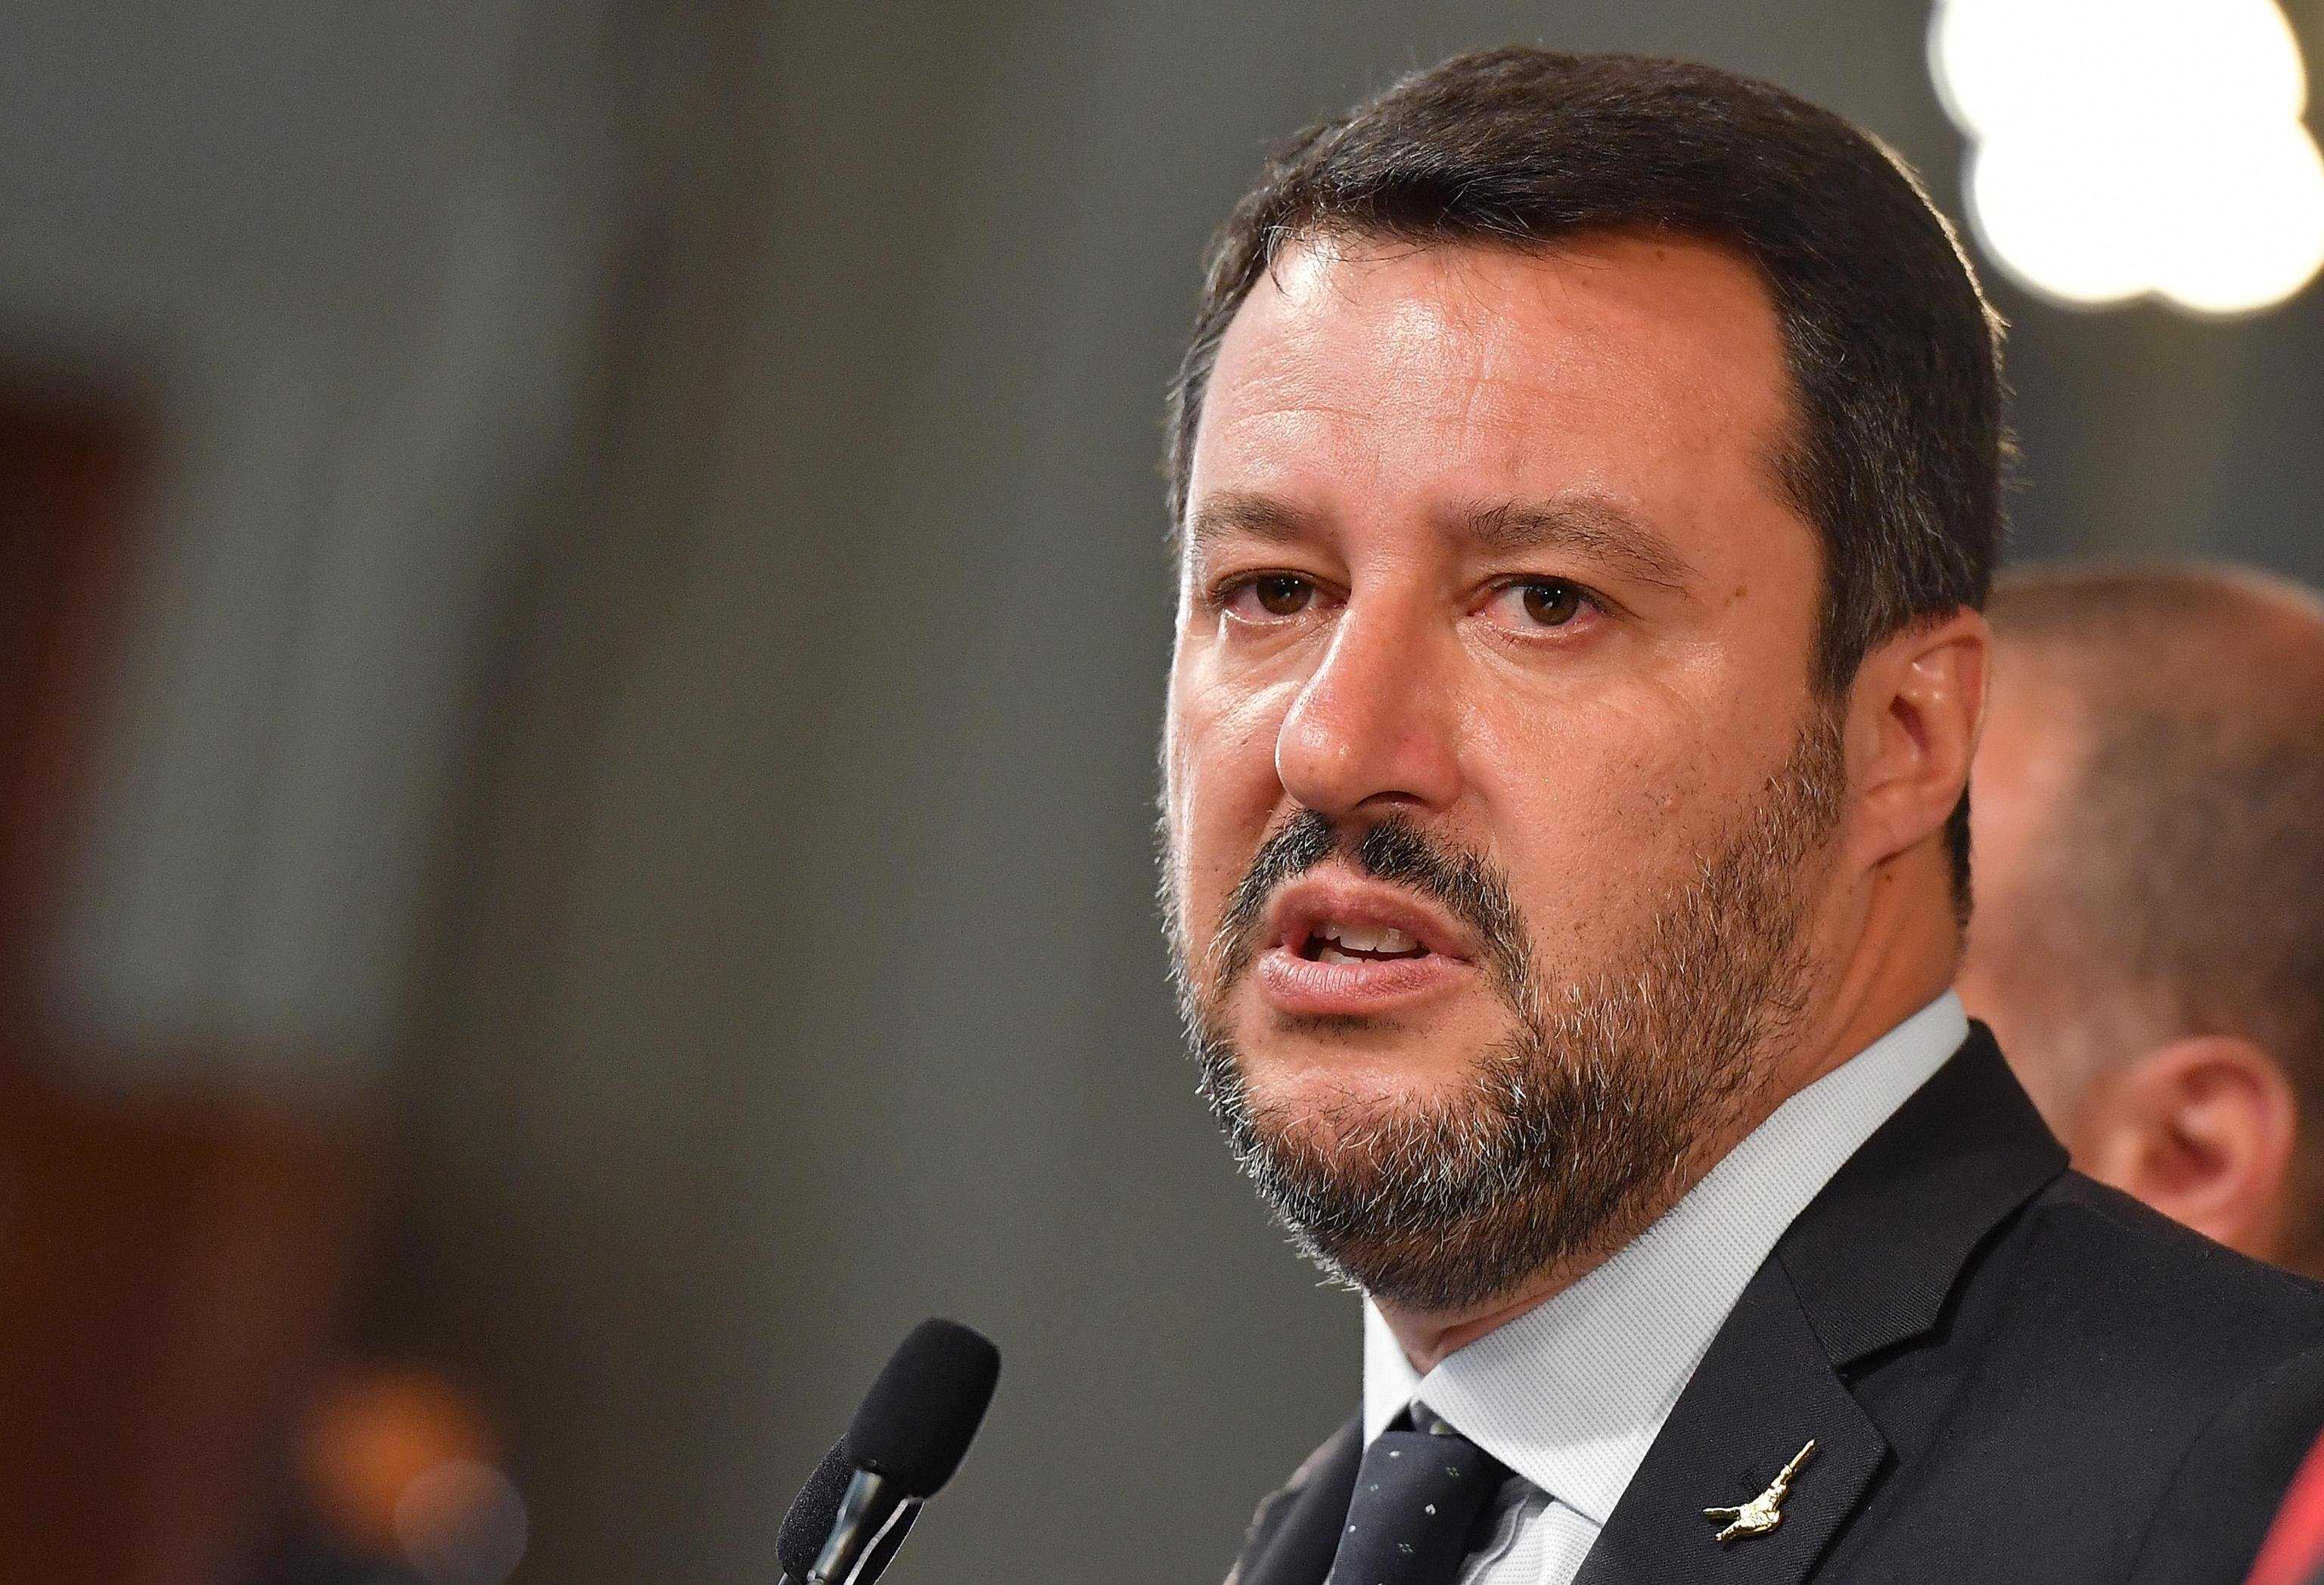 Caso Gregoretti. Senato, si' a processo per Salvini (Video intervento Salvini)